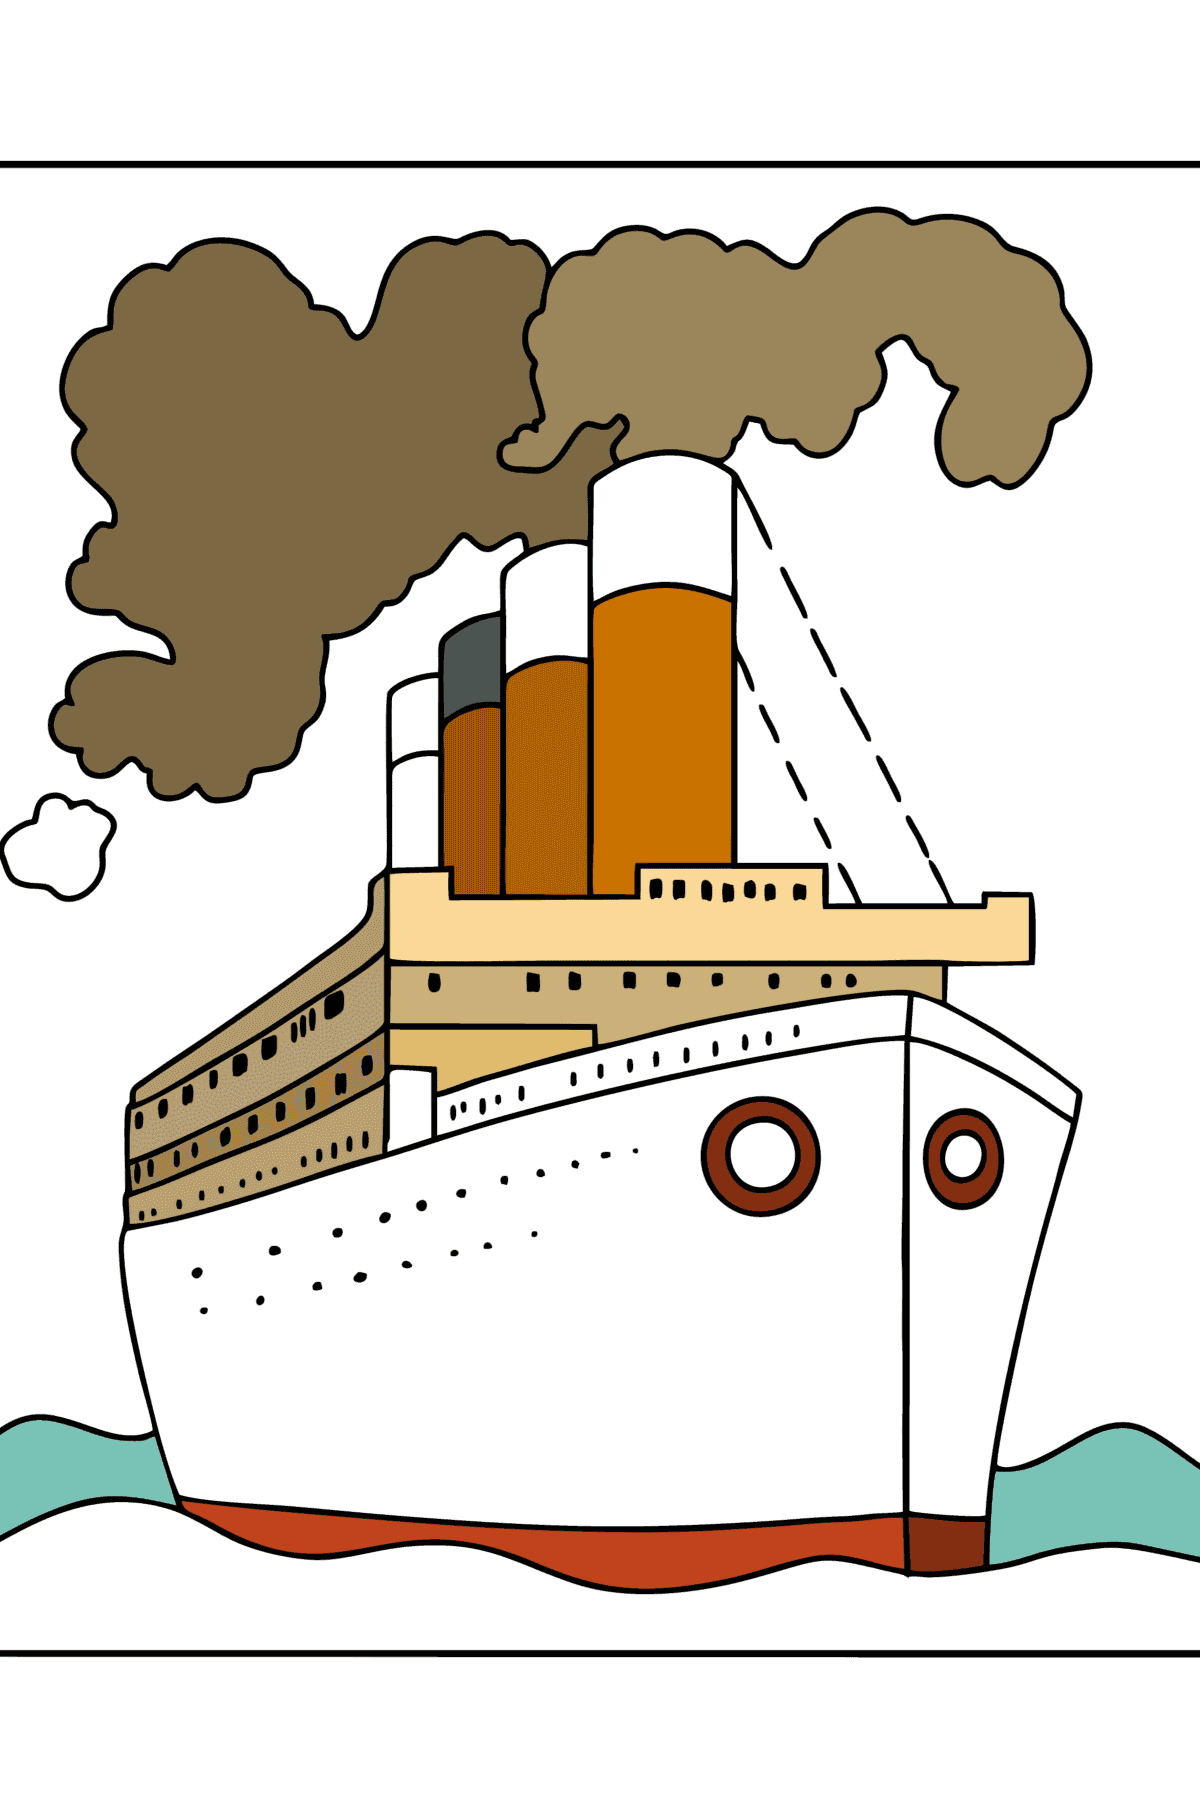 Раскраска Корабль в океане - Картинки для Детей